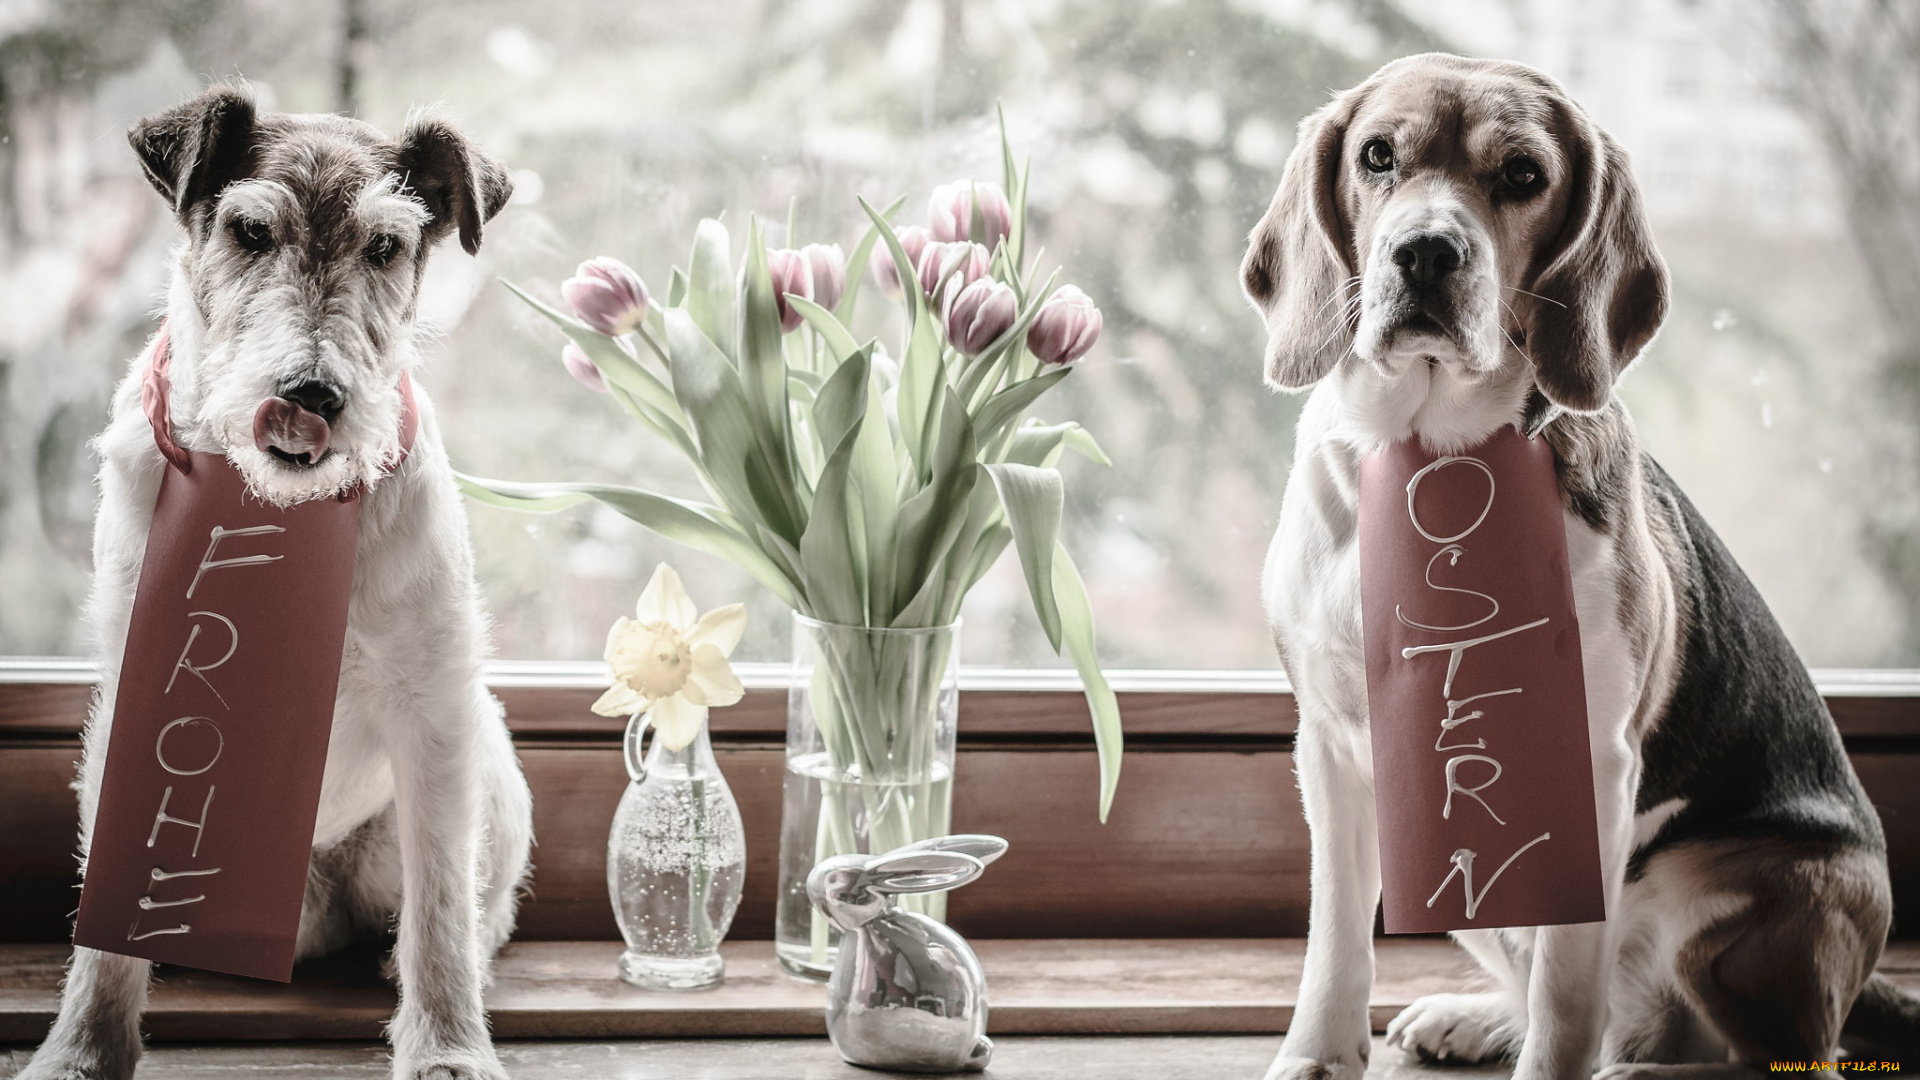 животные, собаки, цветы, окно, бигль, ваза, фигурка, тюльпаны